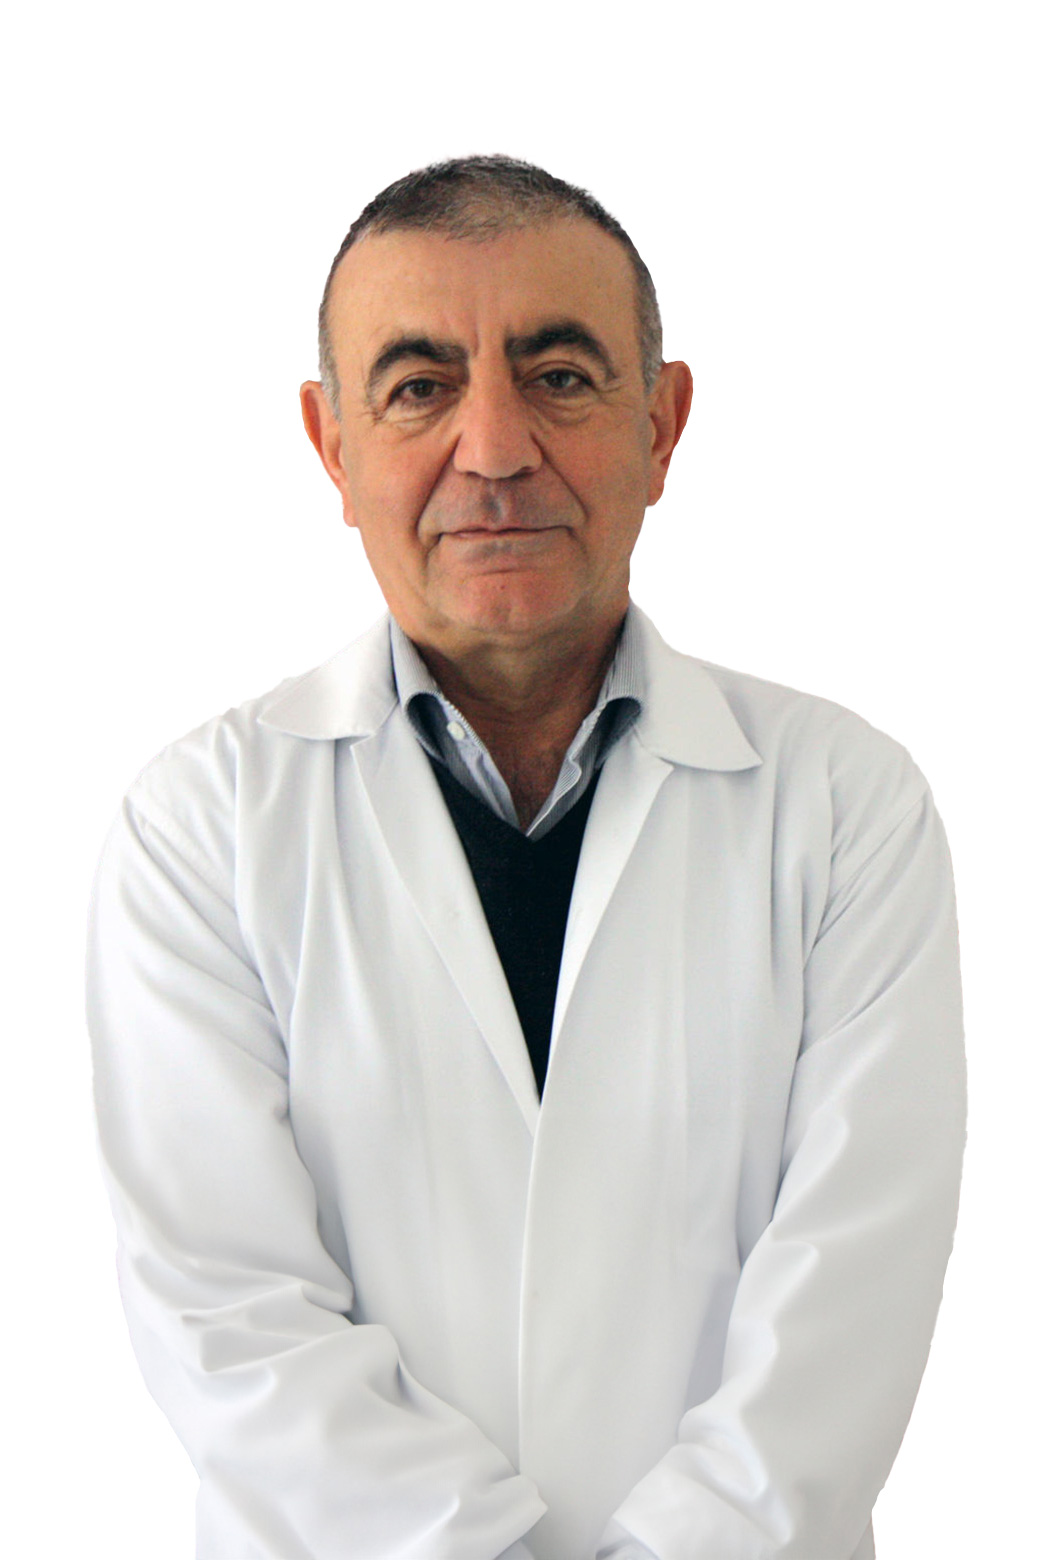 Uzm. Dr. Zafer ŞENTUT